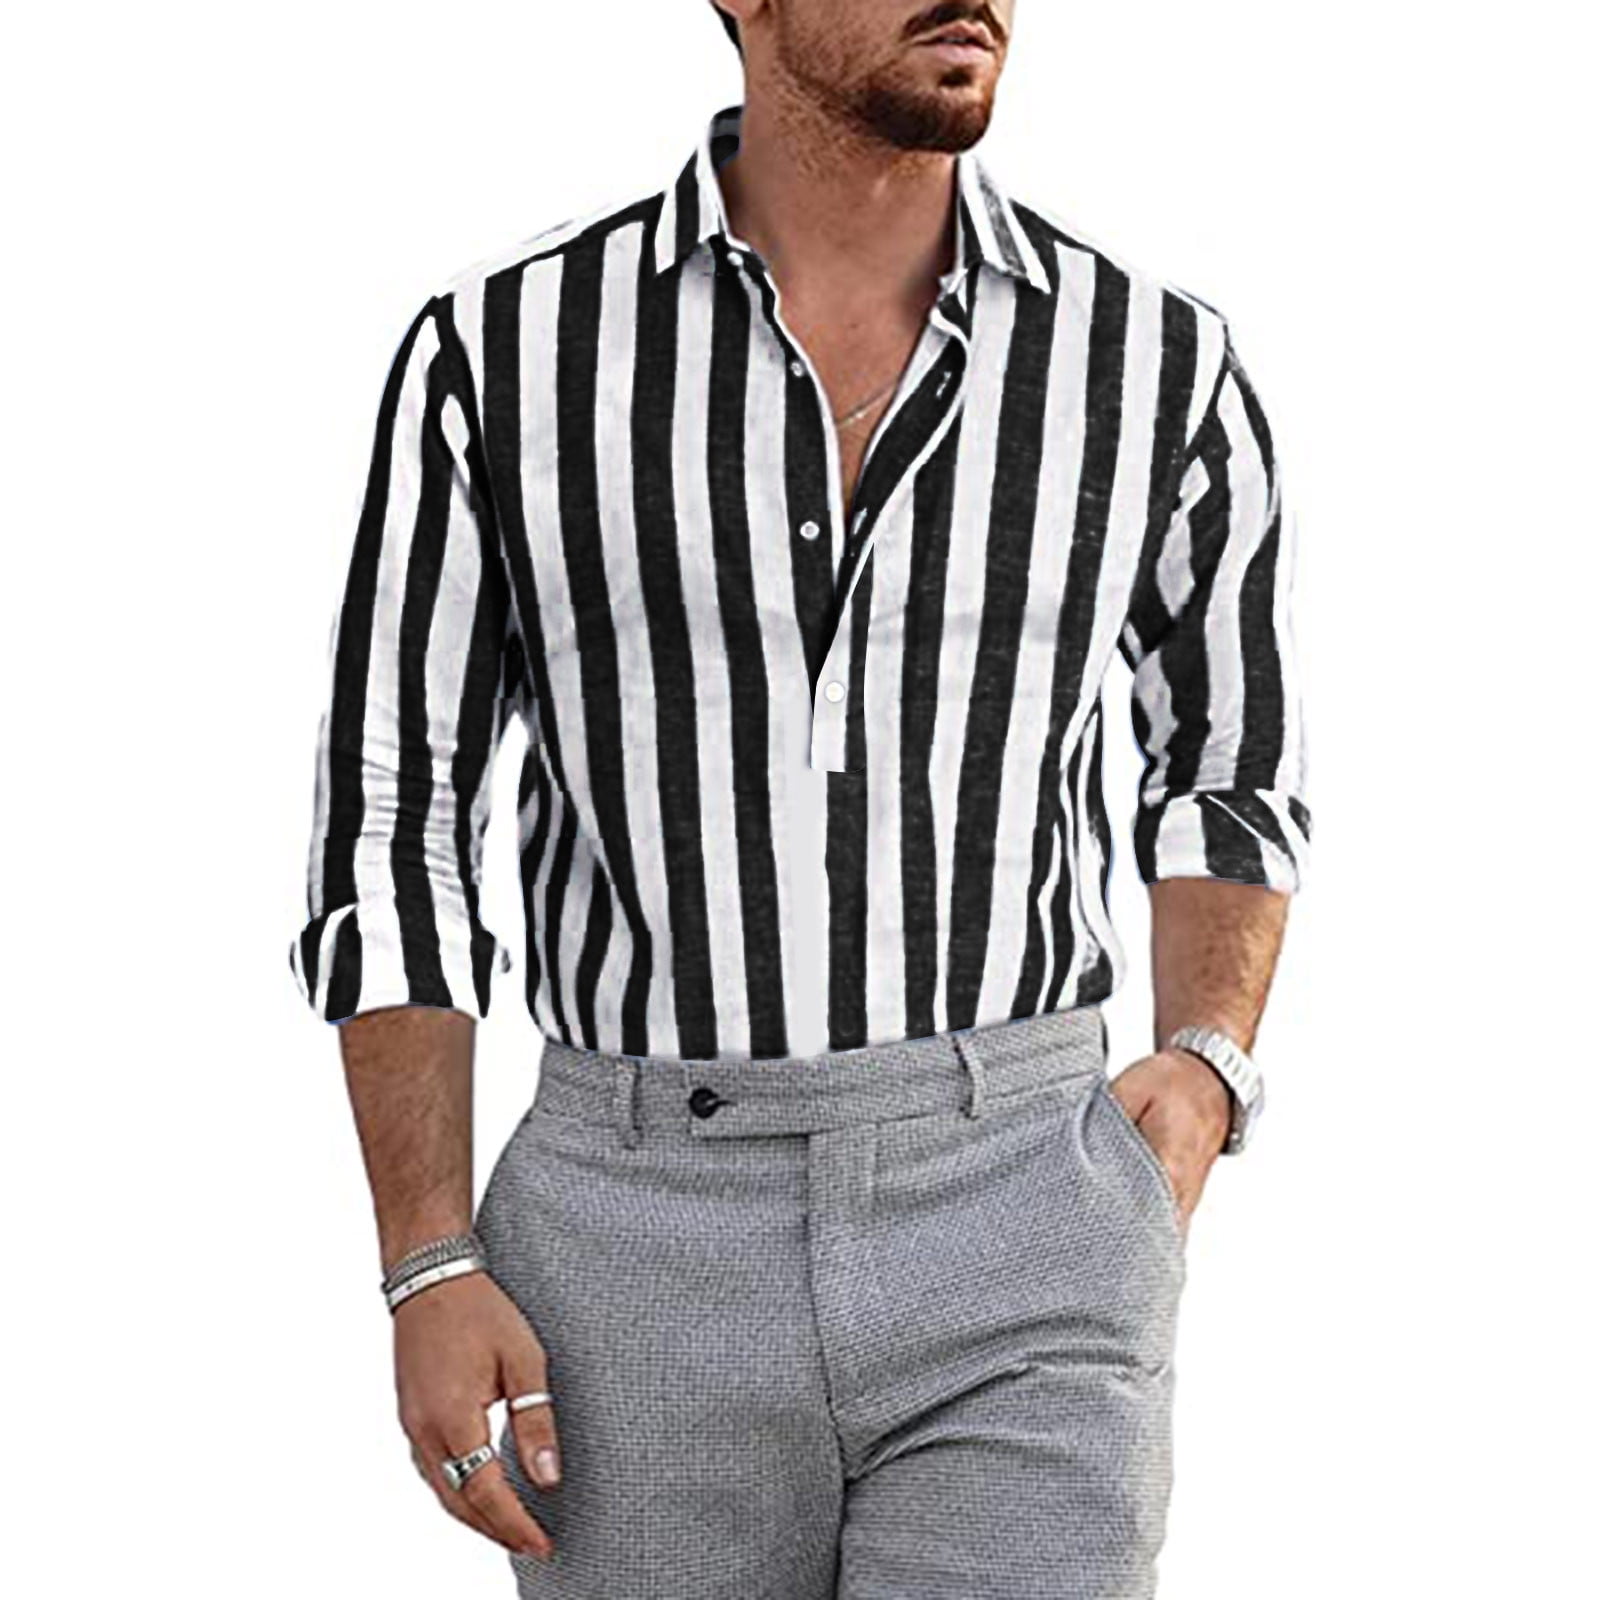 Men's Stripe Shirts